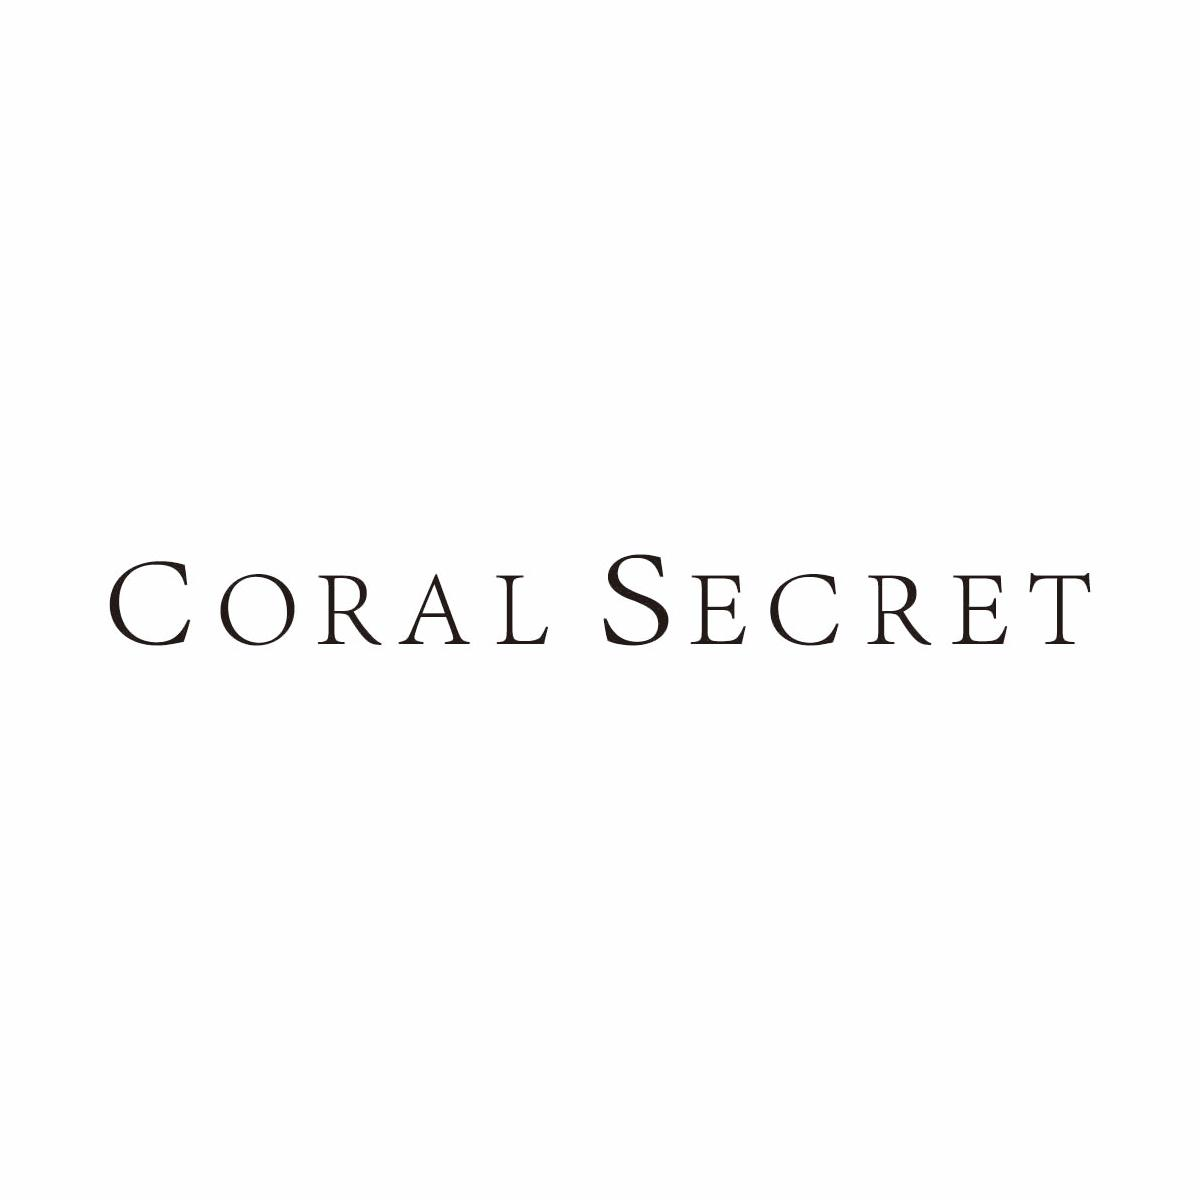 Coral secret